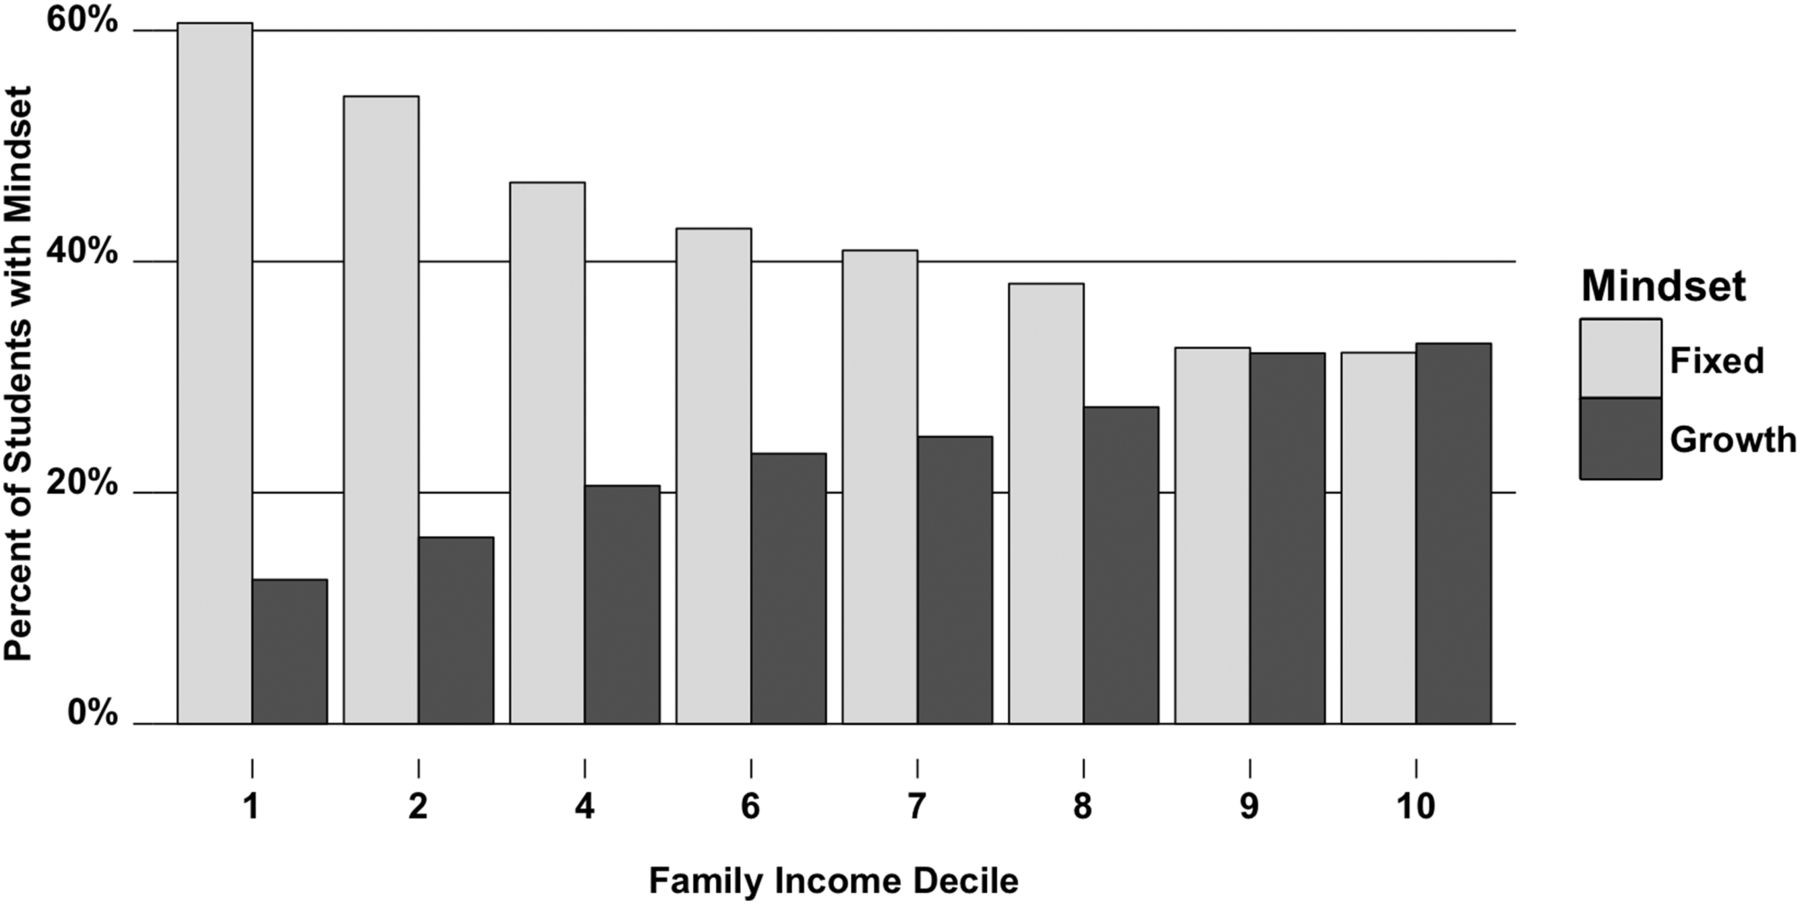 Family Income Decile